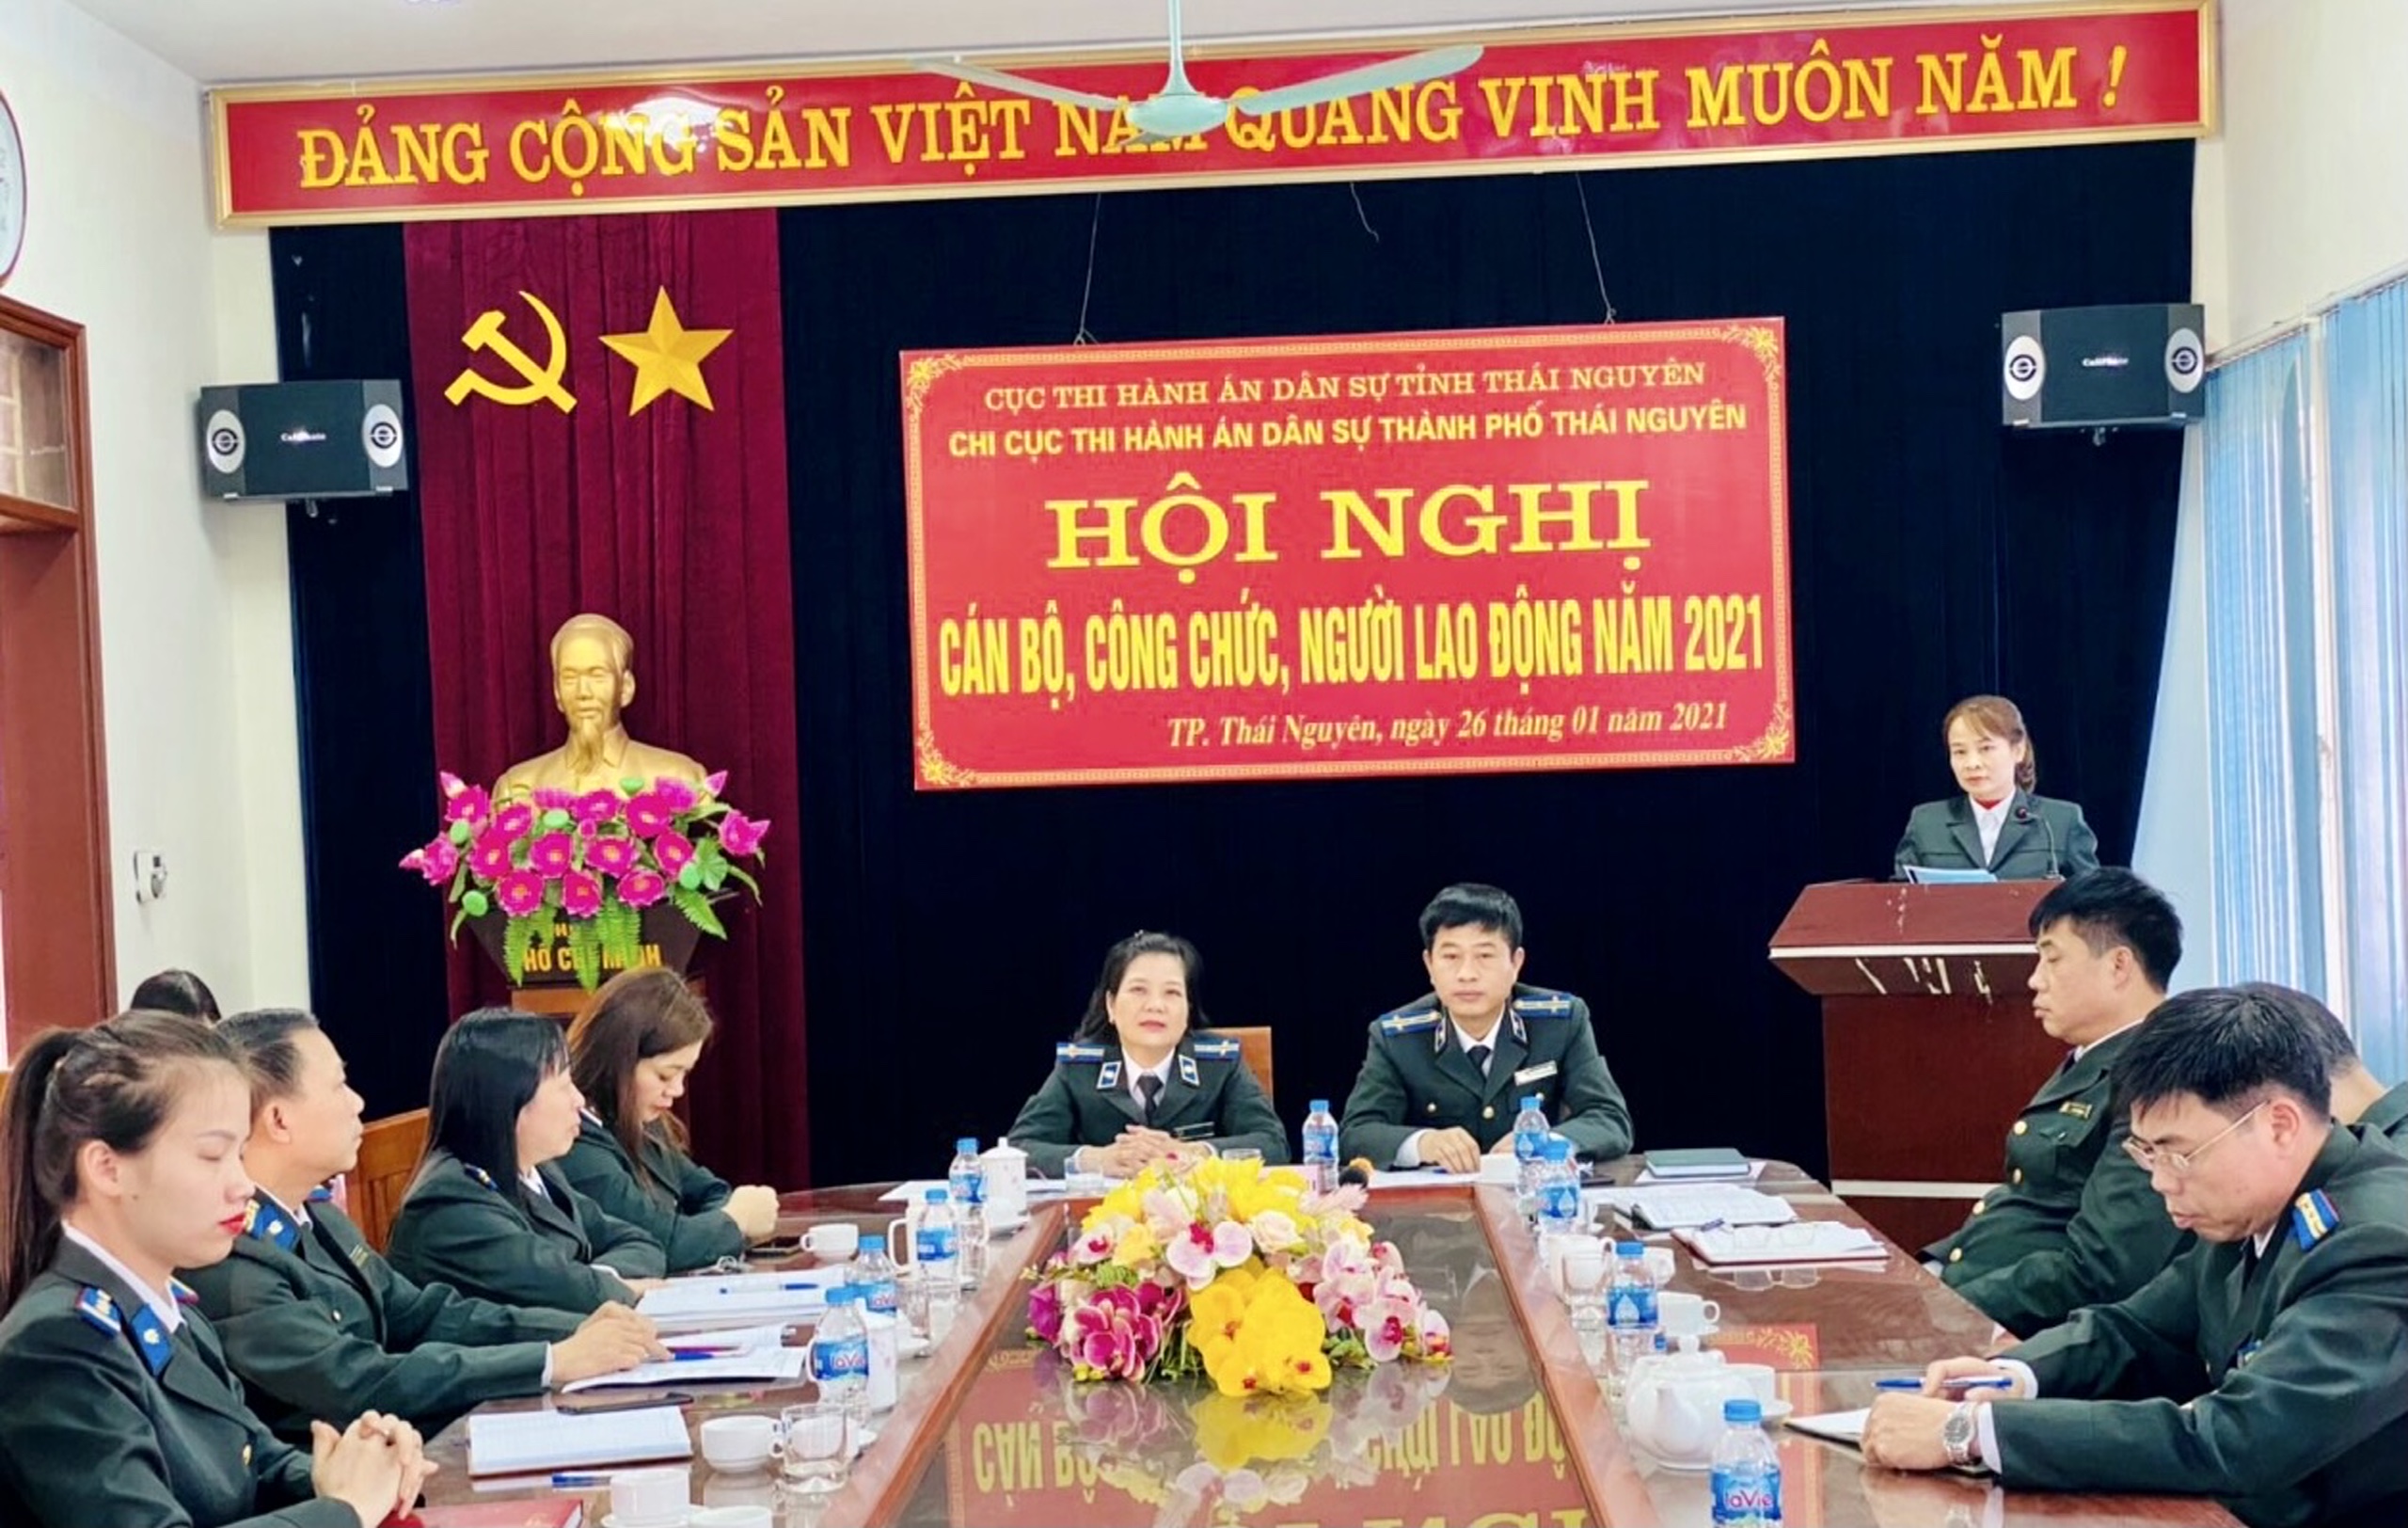 Hội nghị cán bộ công chức, người lao động năm 2021 Chi cục THADS thành phố Thái Nguyên